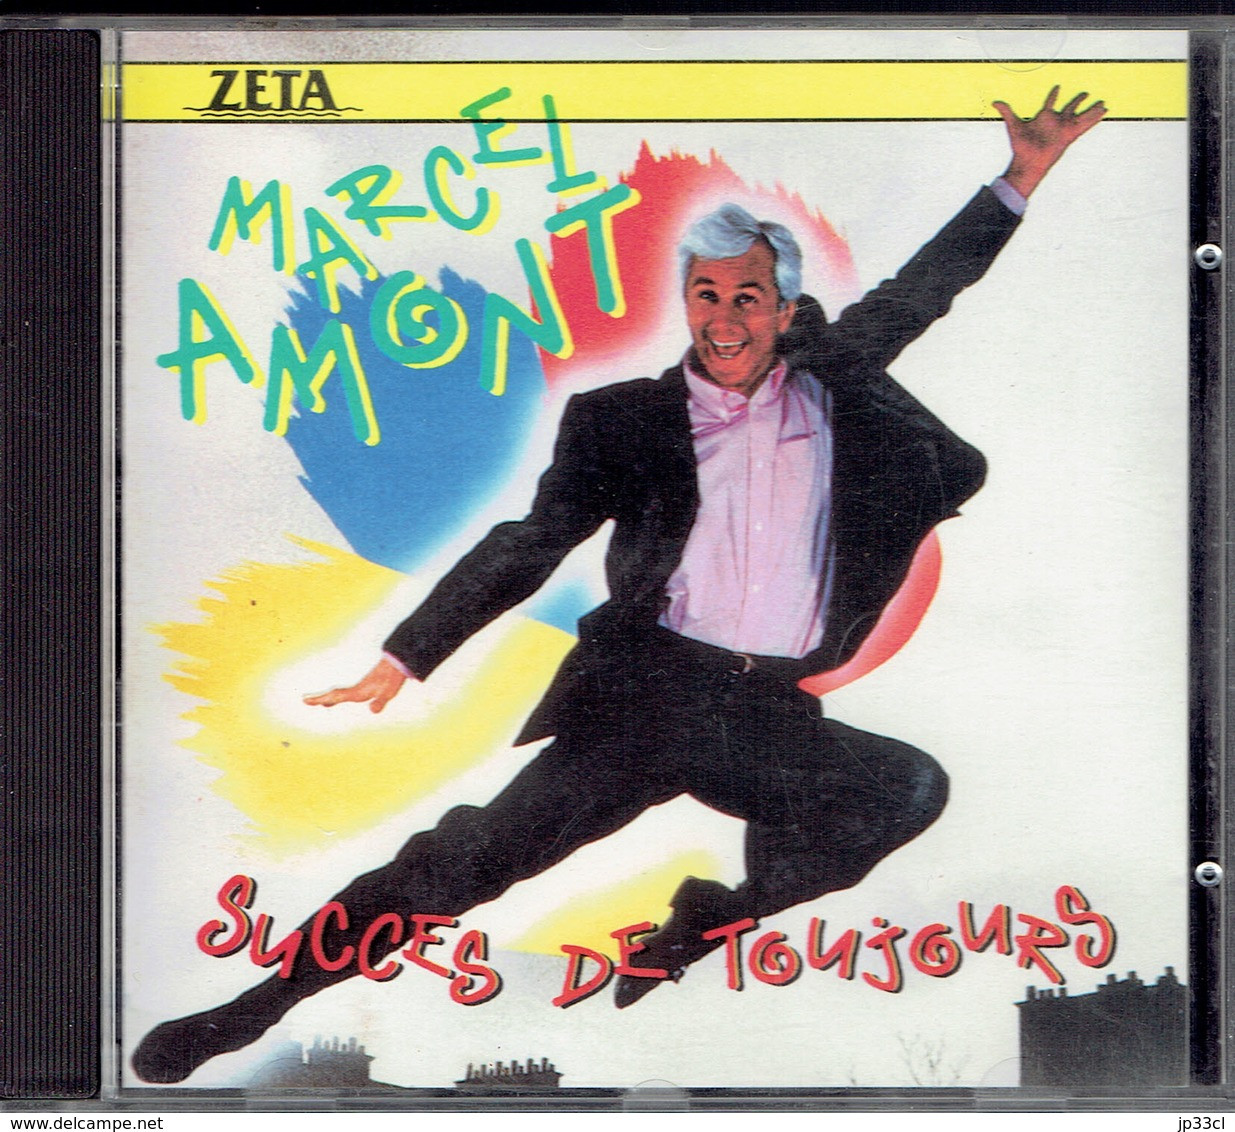 Succès De Toujours Par Marcel Amont (Zeta, 1989) - Compilaciones